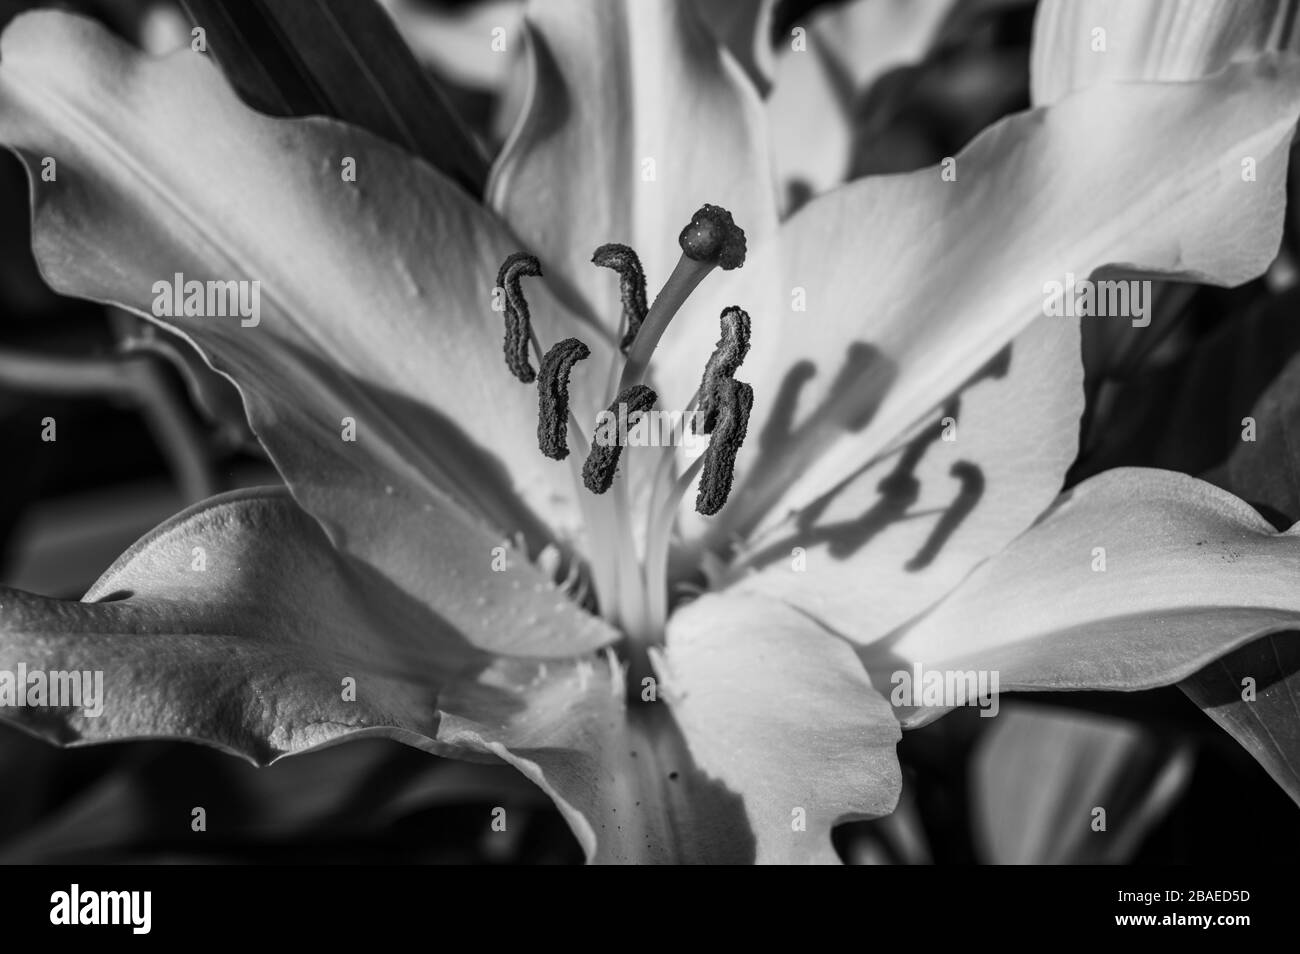 Closeup noir et blanc de la stigmatisation, du style, des étamines, des filaments et des pétales d'une fleur de lys blanche à la lumière directe du soleil créant des ombres. Banque D'Images